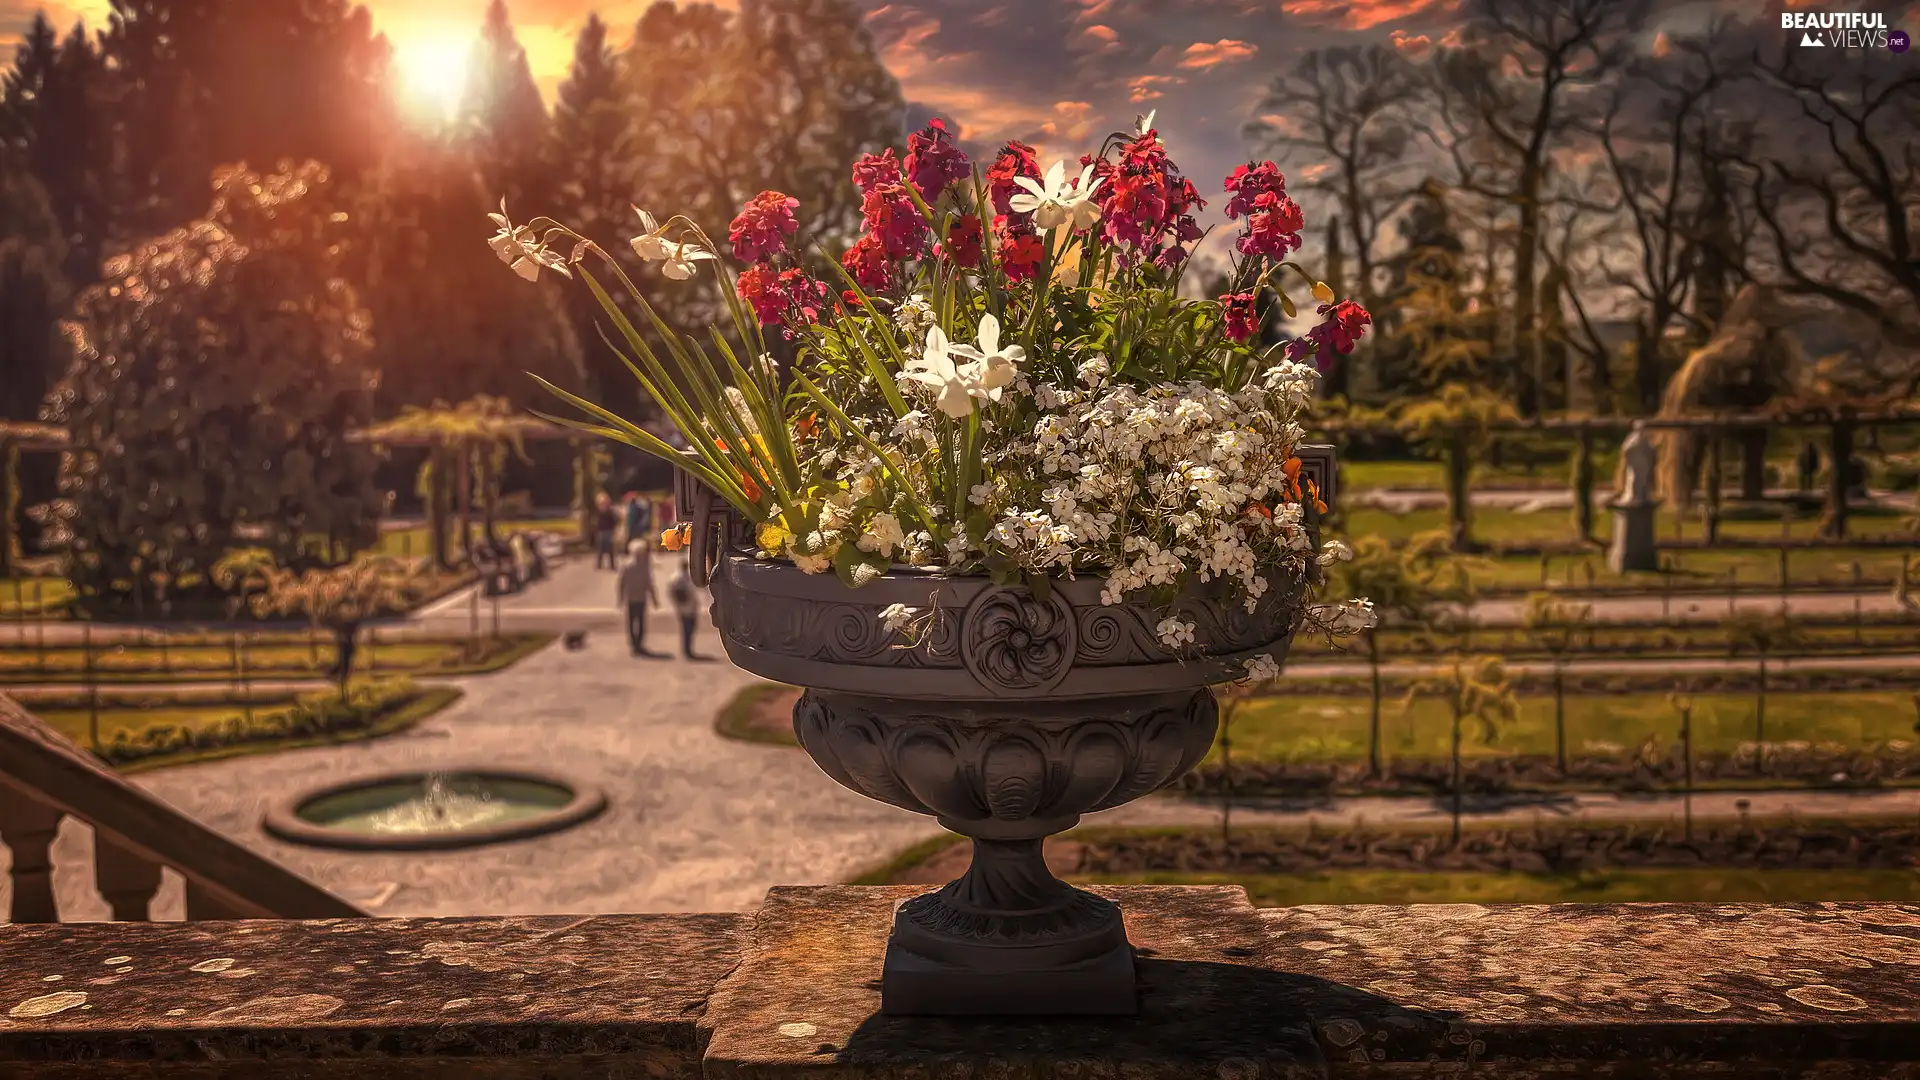 Flowers, Park, bowl